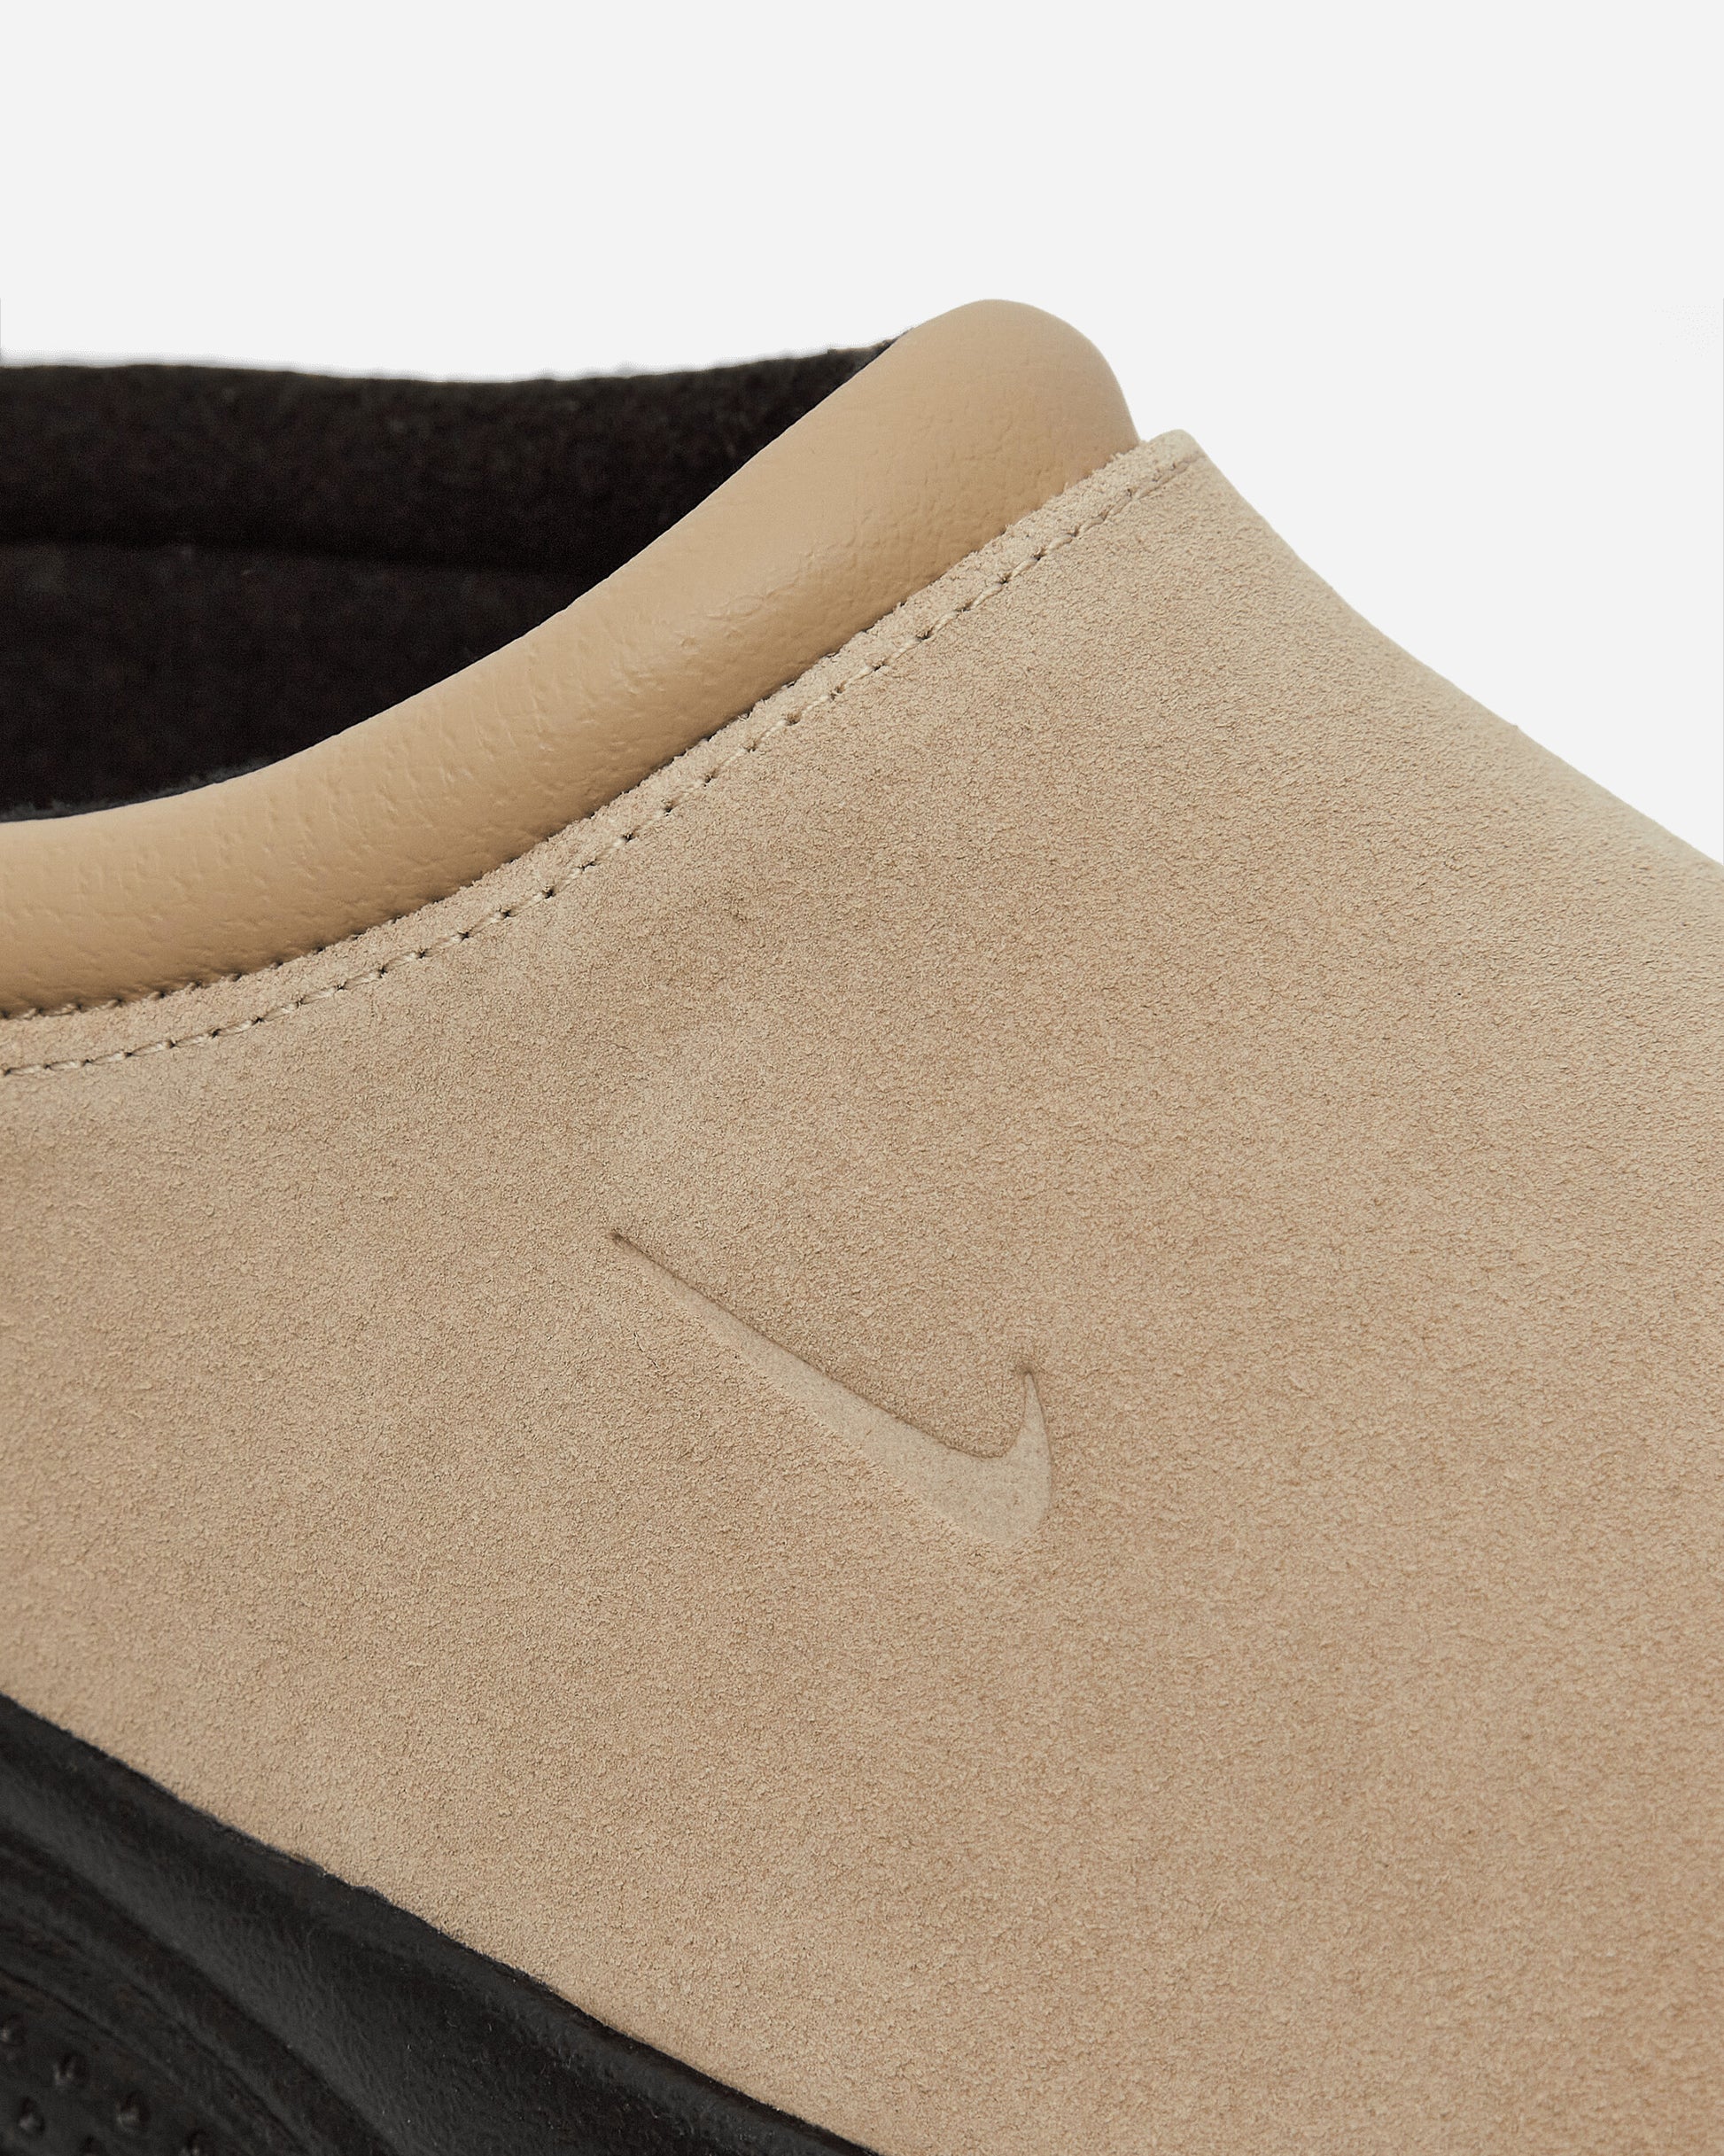 Nike Acg Rufus Limestone/Limestone Sneakers Low FV2923-200